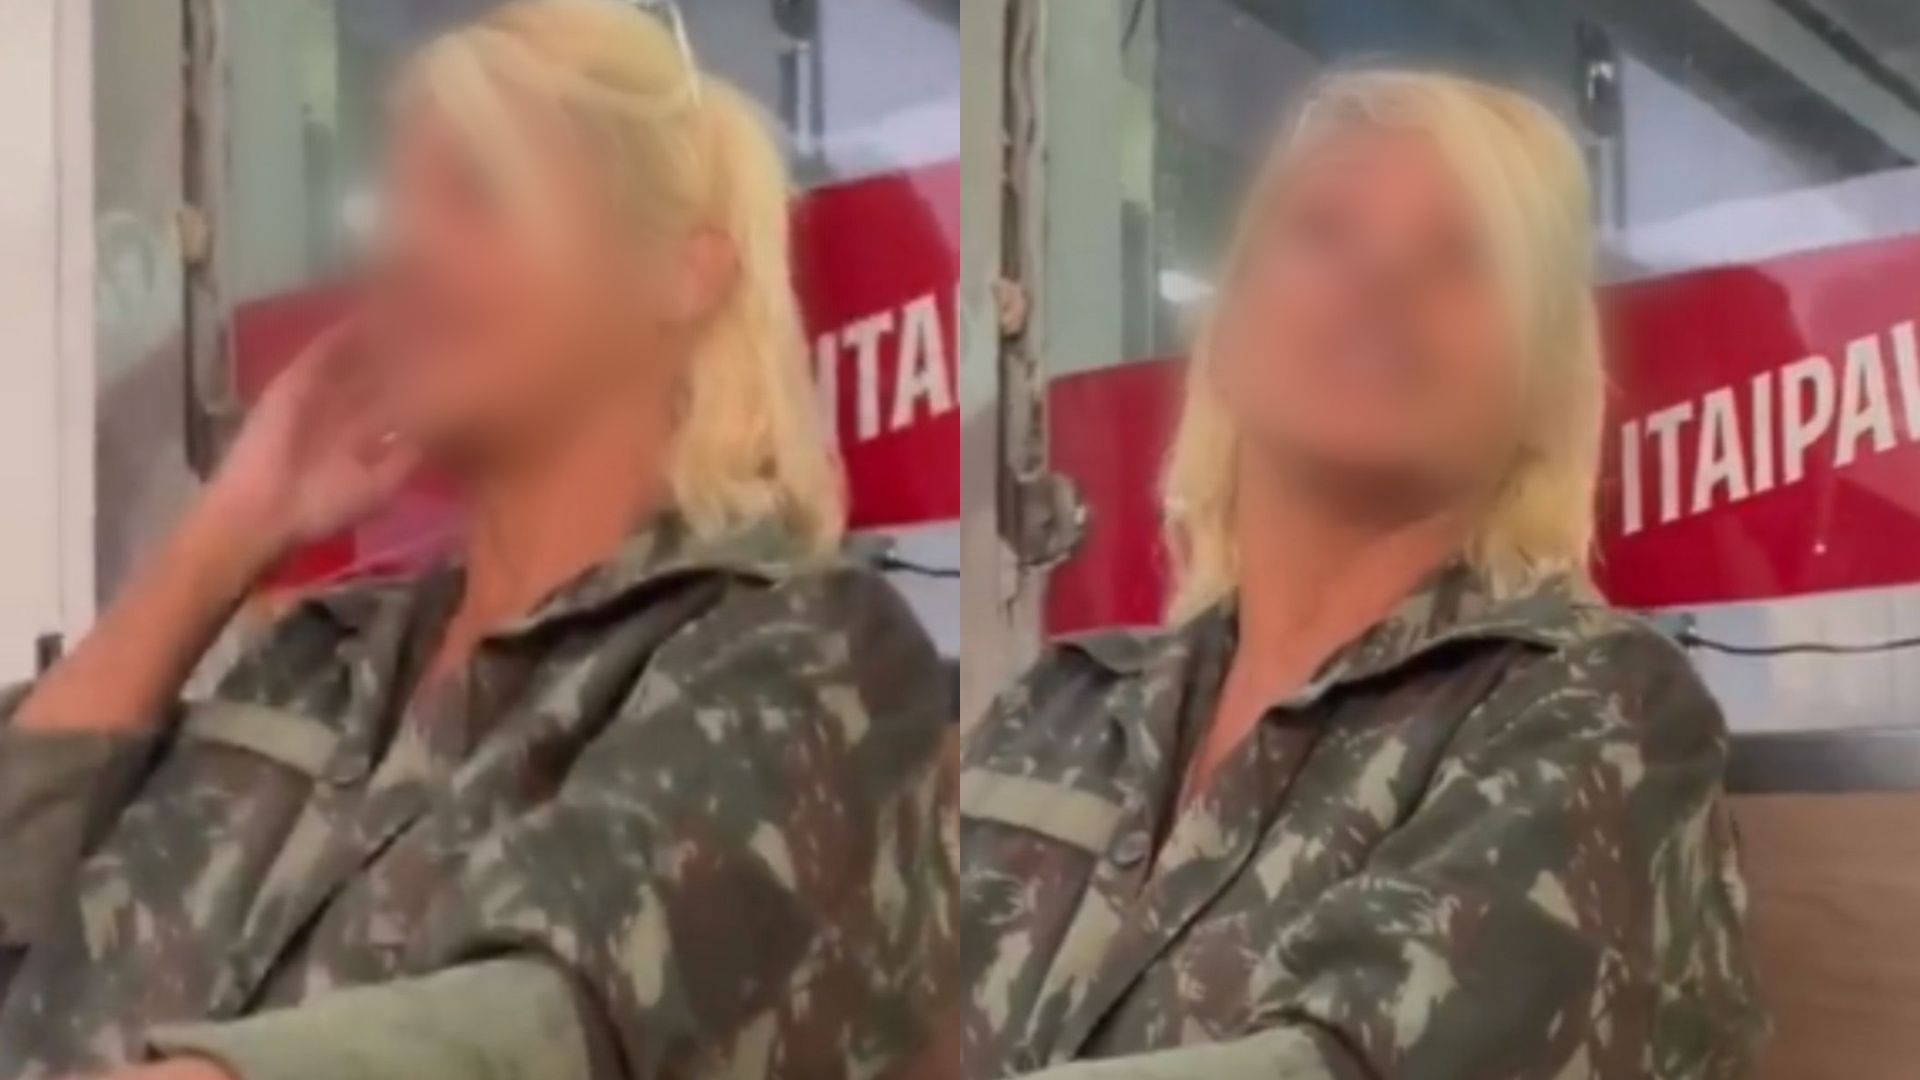 Mulher ouve ofensas racistas em posto de gasolina em Salvador, e filma ataques de suspeita; assista